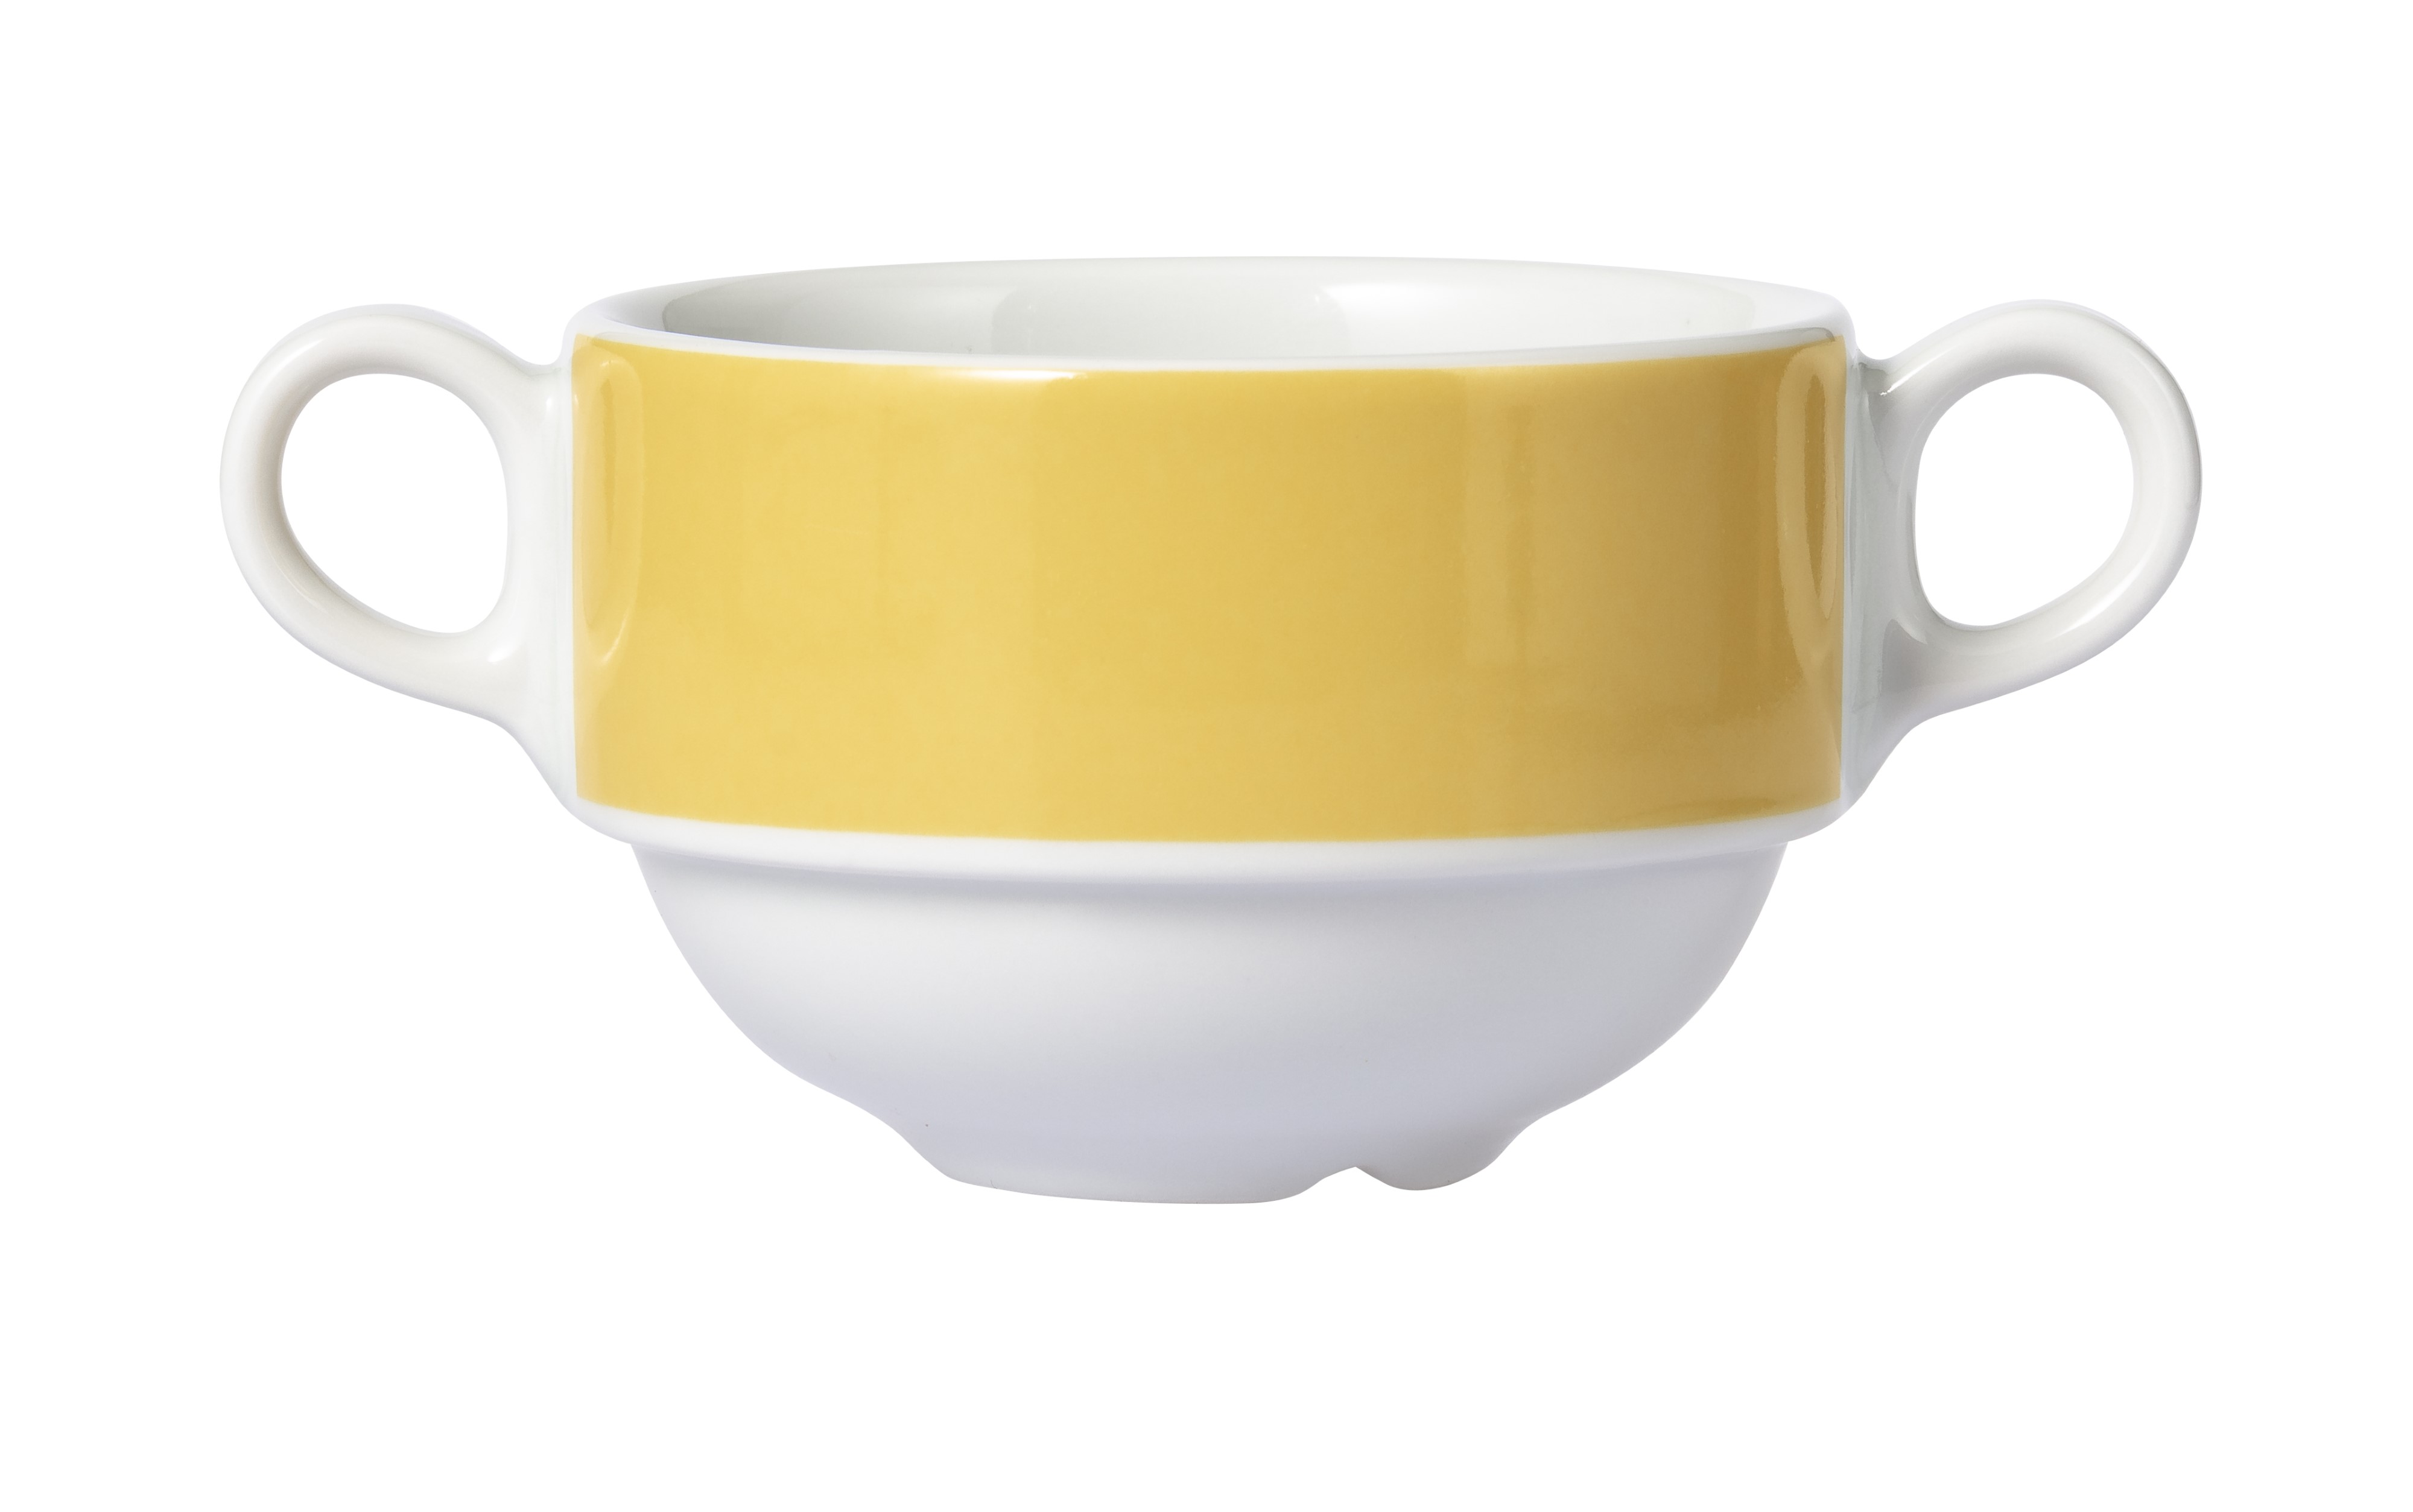 MERIDIAN Suppen-Obertasse, 0,32 ltr., gelb, aus Porzellan, von caterado. Made in Europe.